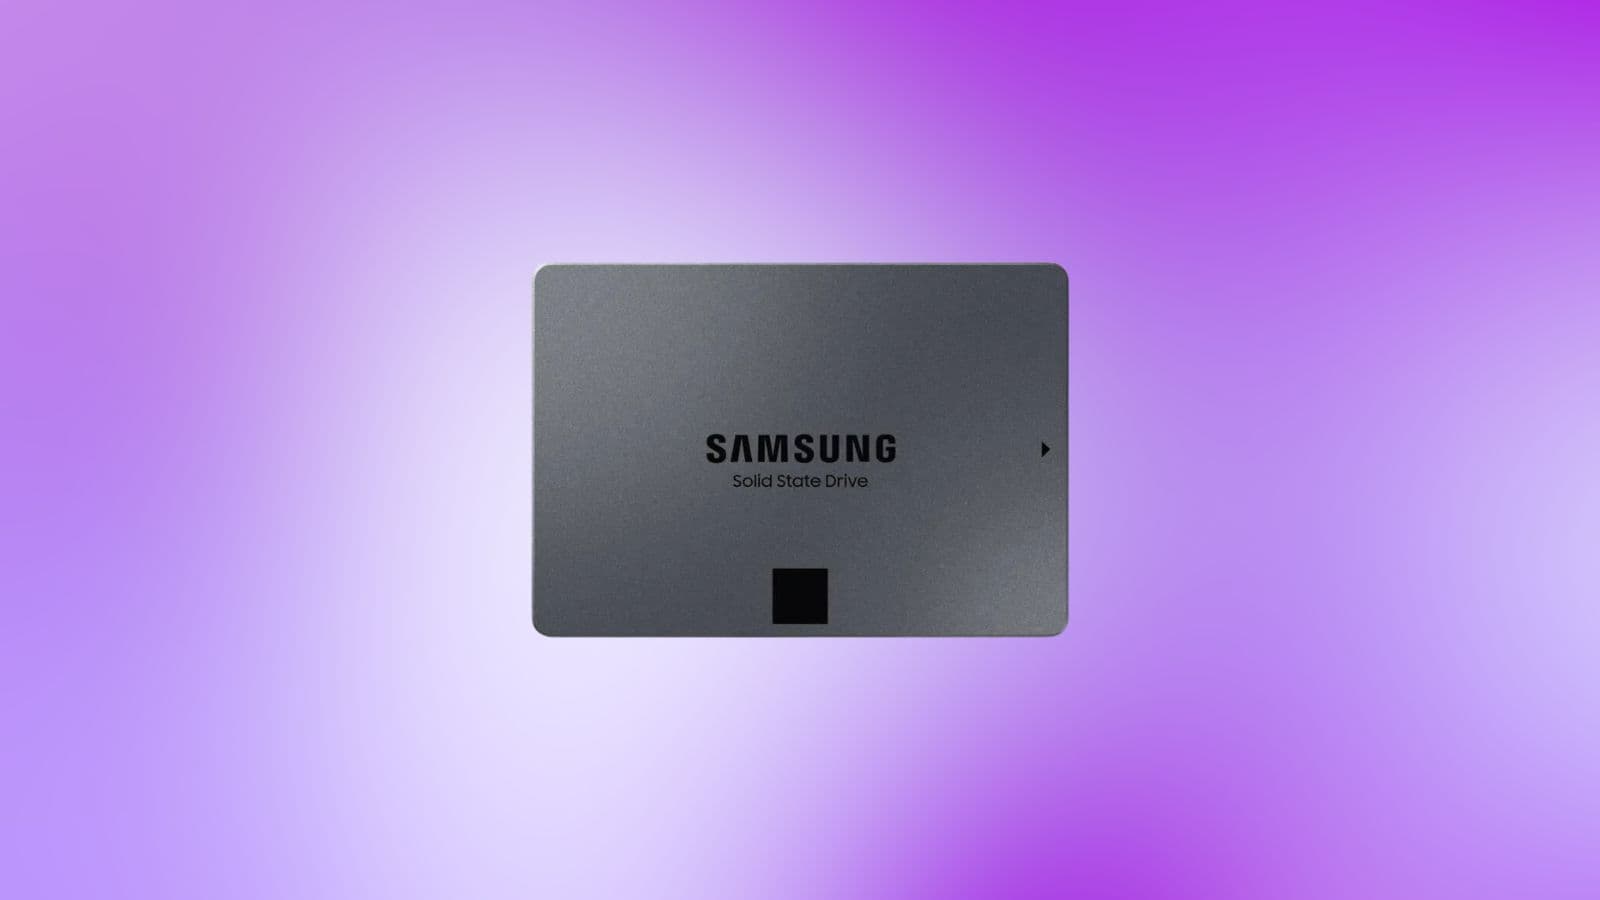 Le SSD Interne 1To de Samsung au meilleur prix 